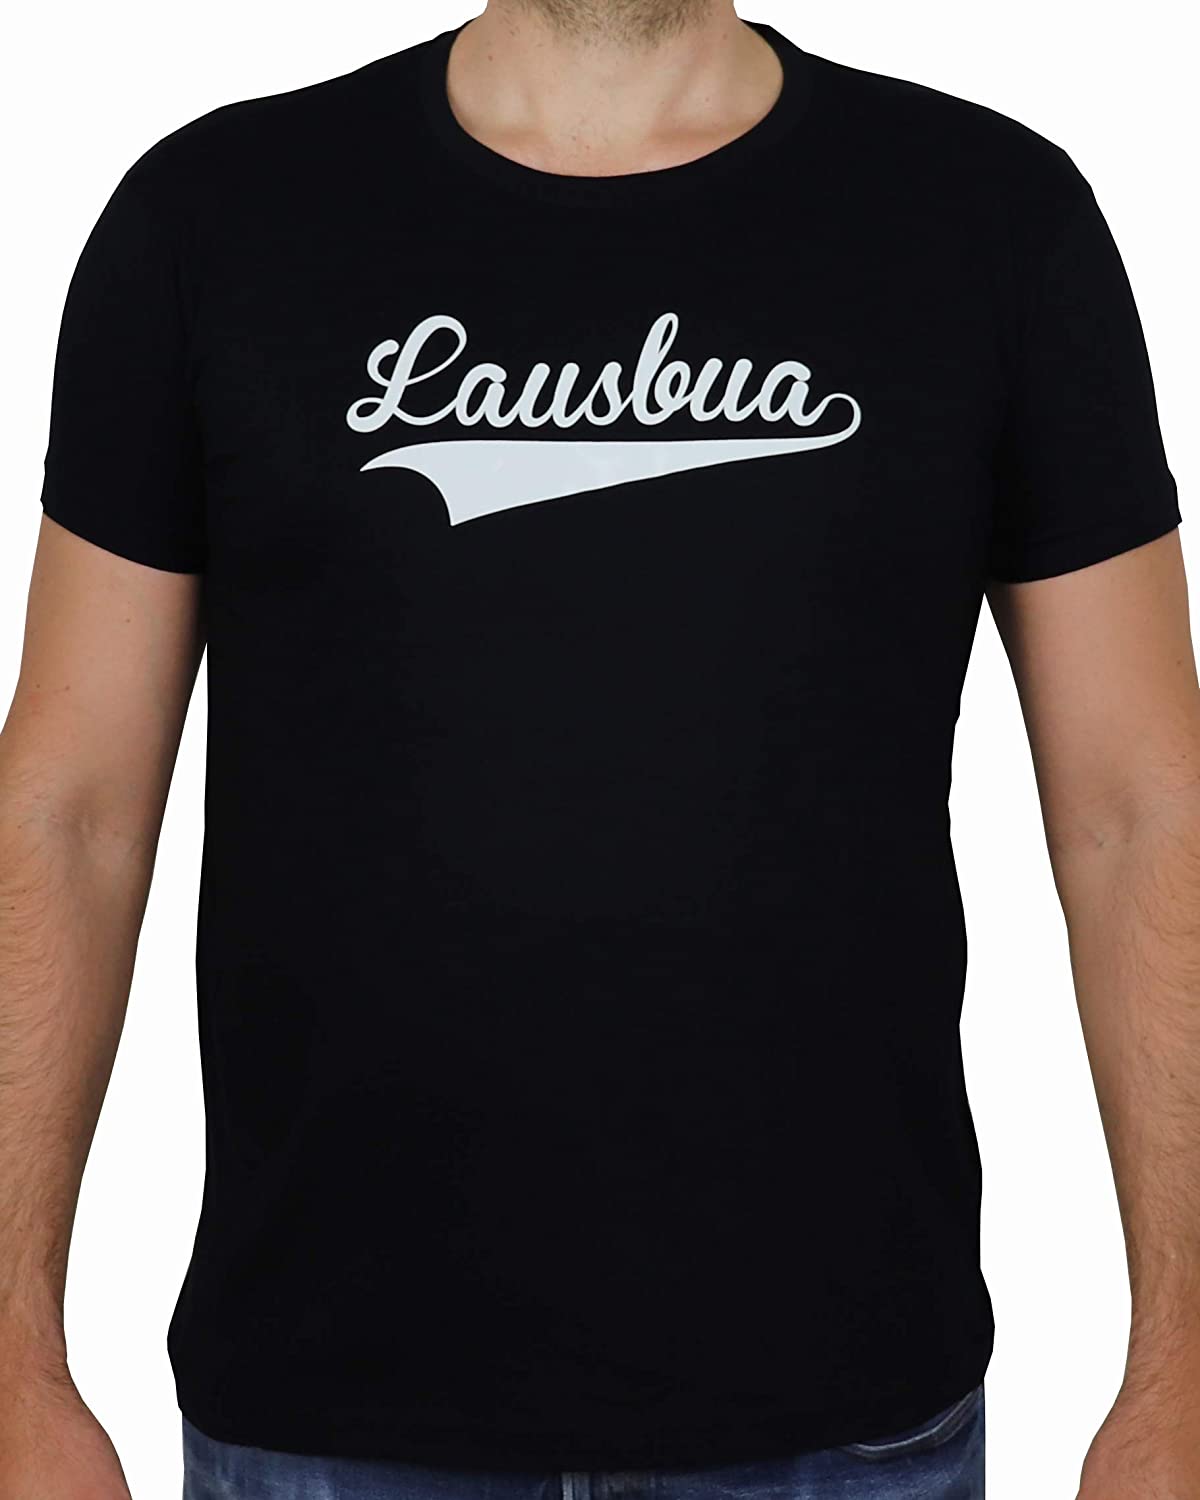 Schwarzes T-Shirt mit weissem Aufdruck Lausbua, Bayrisch Boarisch Bayern Dialekt, freche bayerische Buben (L)